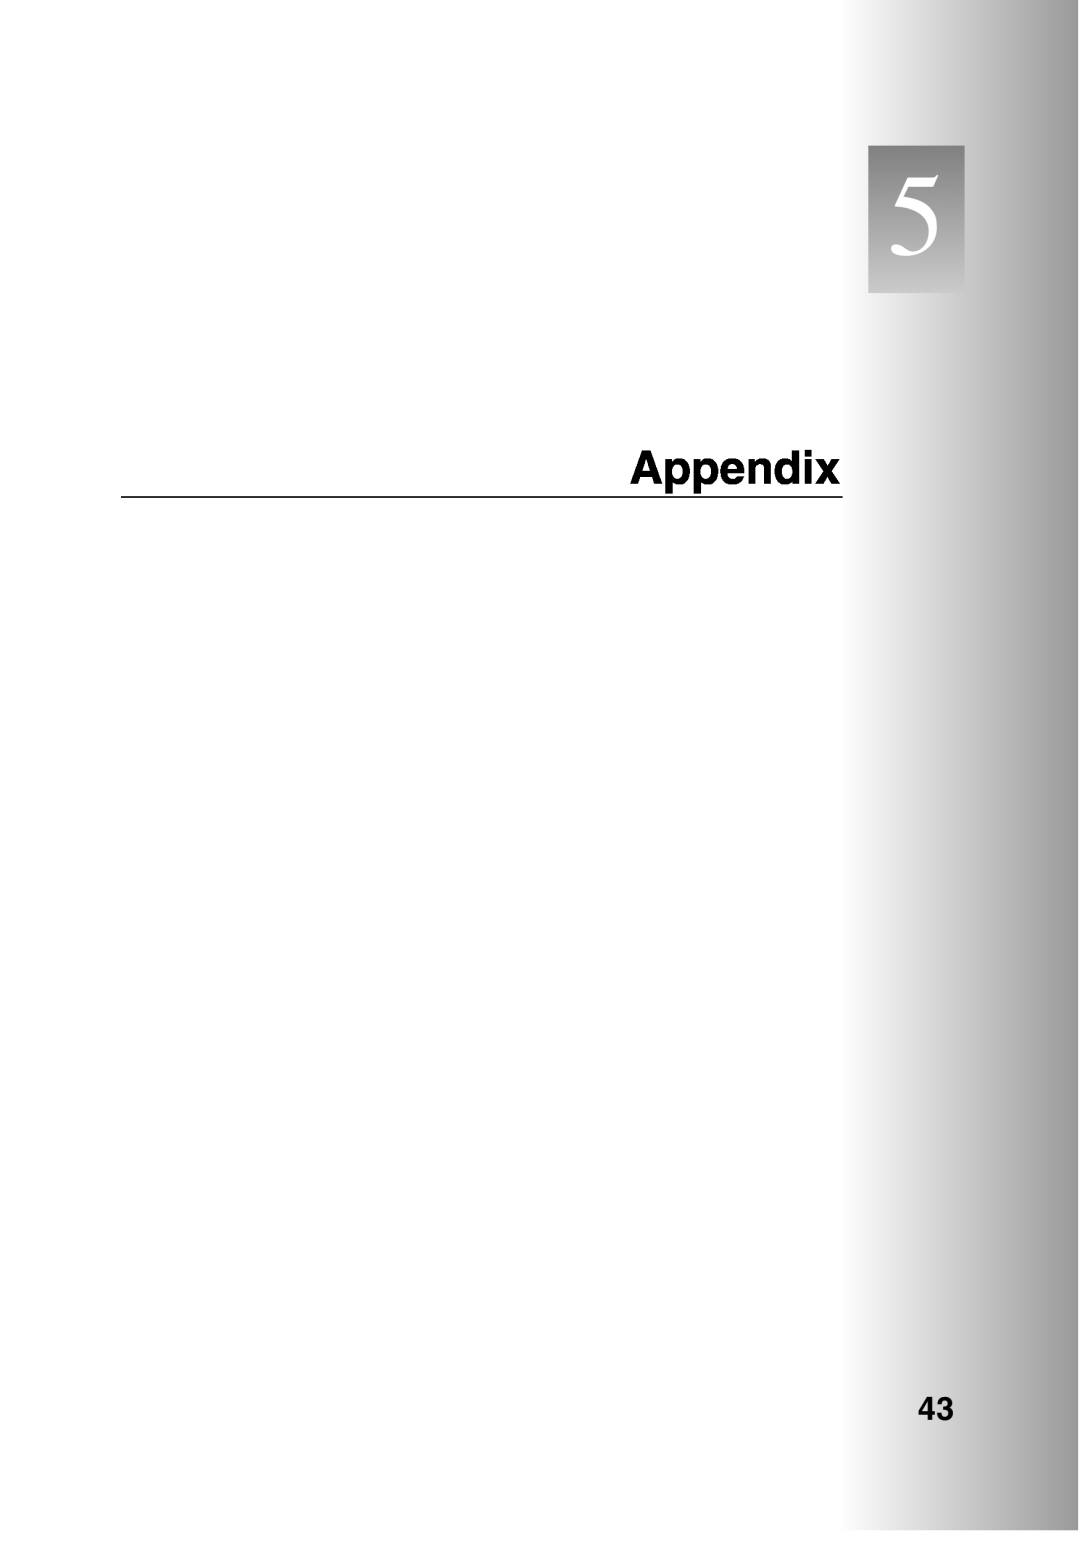 Sanyo POA-LN01 appendix Appendix 